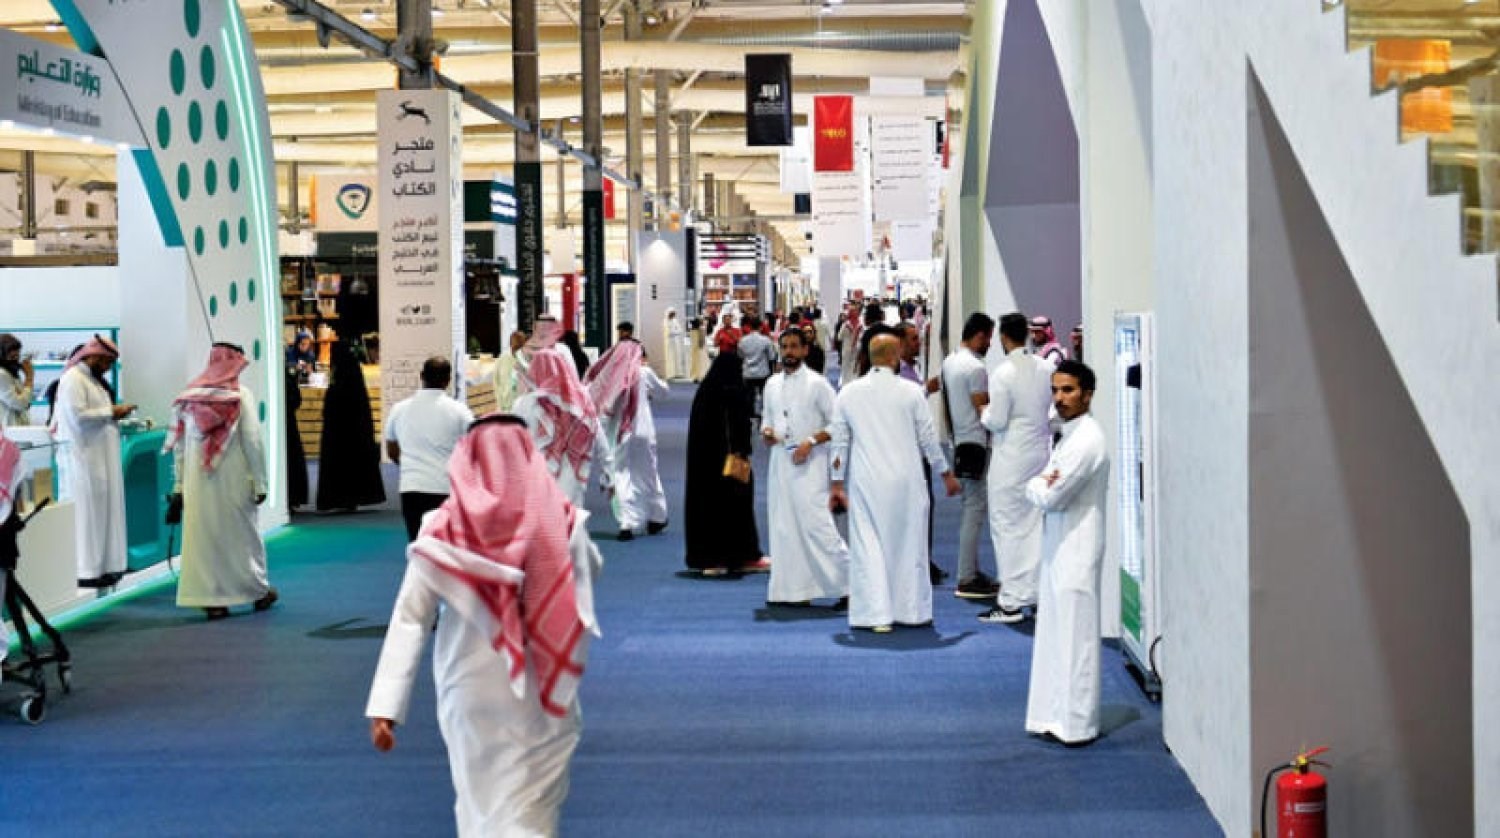 أكثر من 200 فعالية في المعرض الدولي للكتاب في الرياض